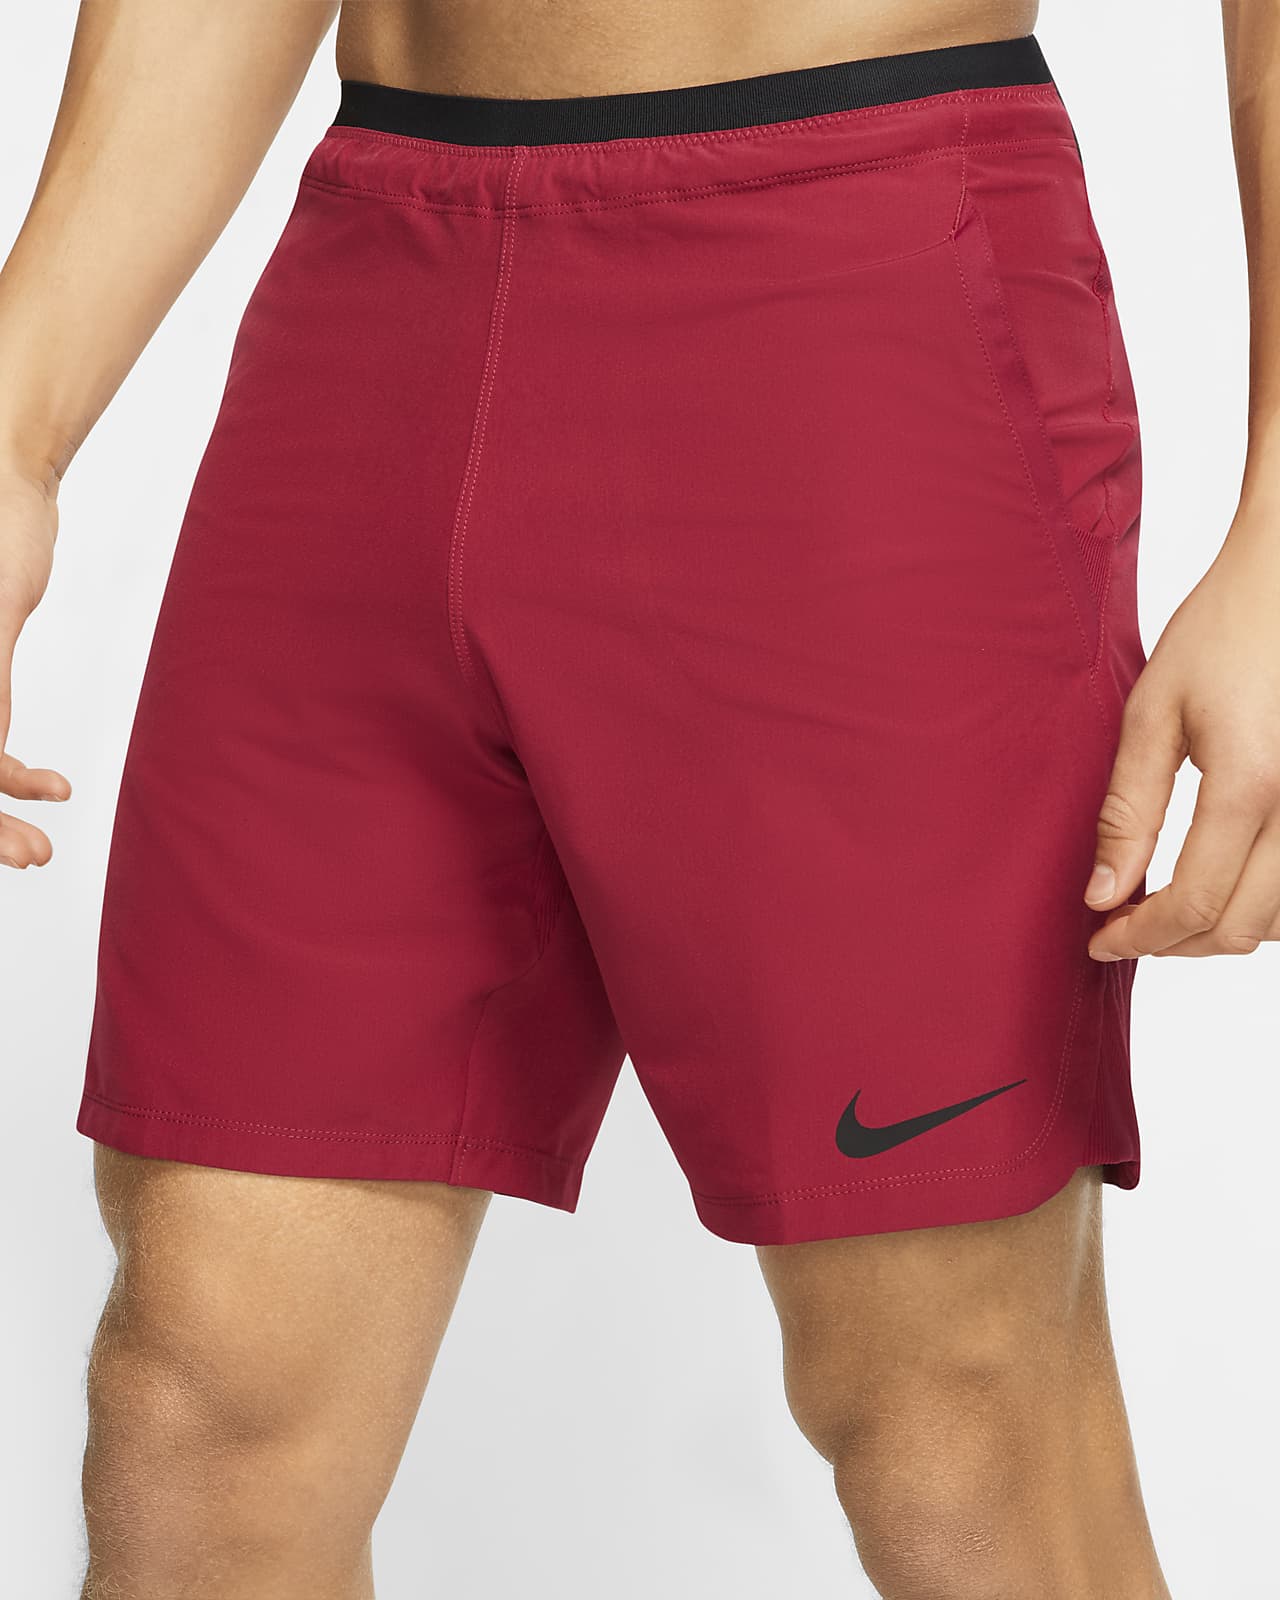 nike pro flex men's shorts